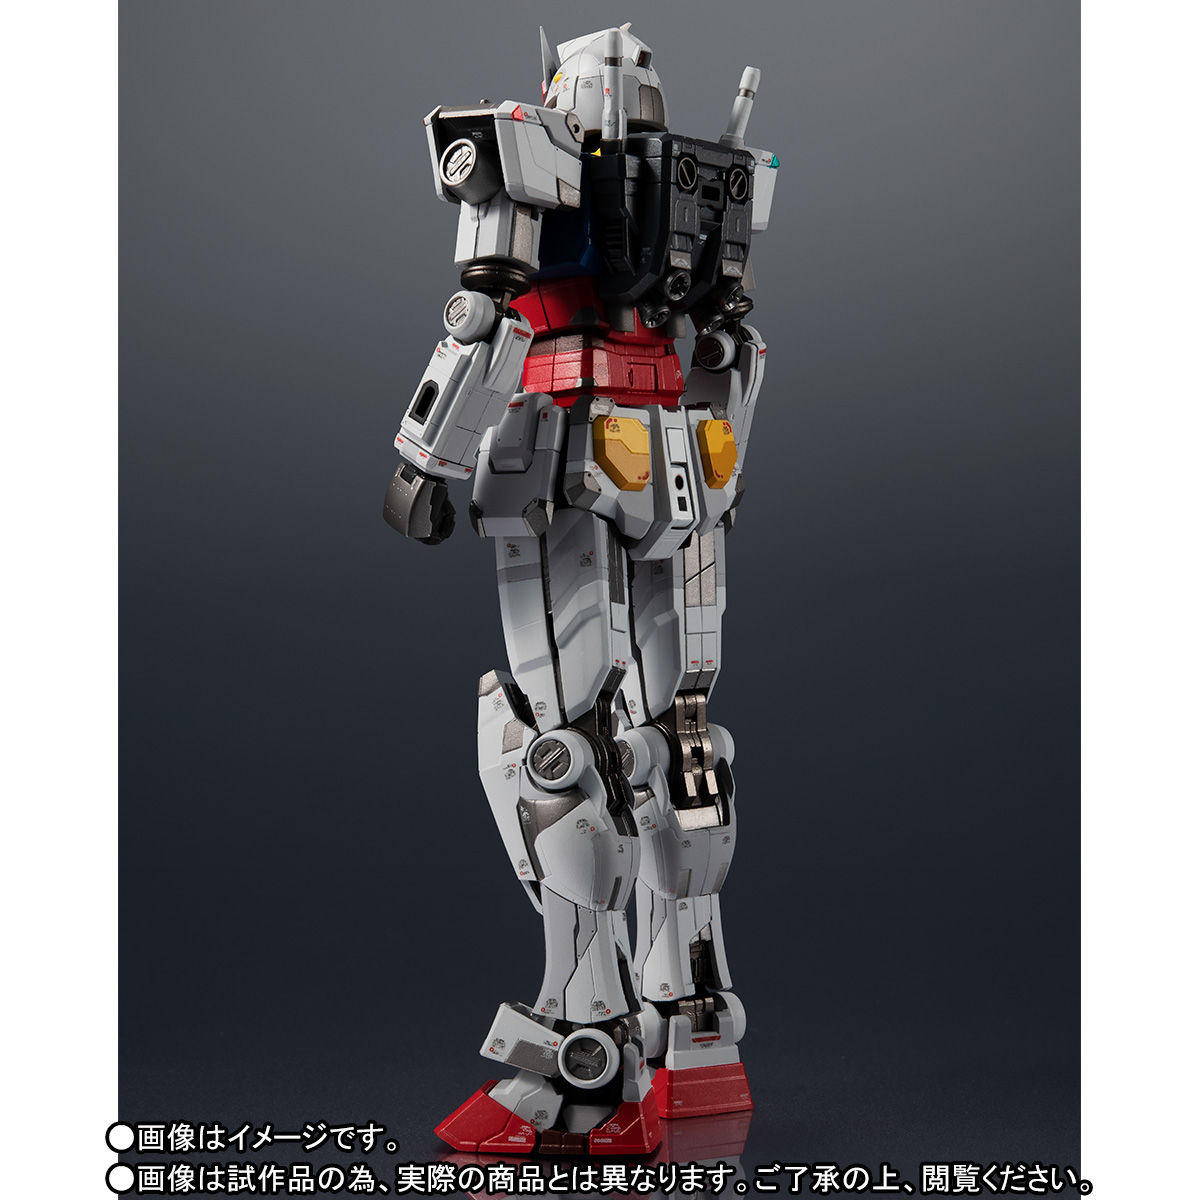 【限定販売】超合金×GUNDAM FACTORY YOKOHAMA『RX-78F00 GUNDAM』可動フィギュア-004